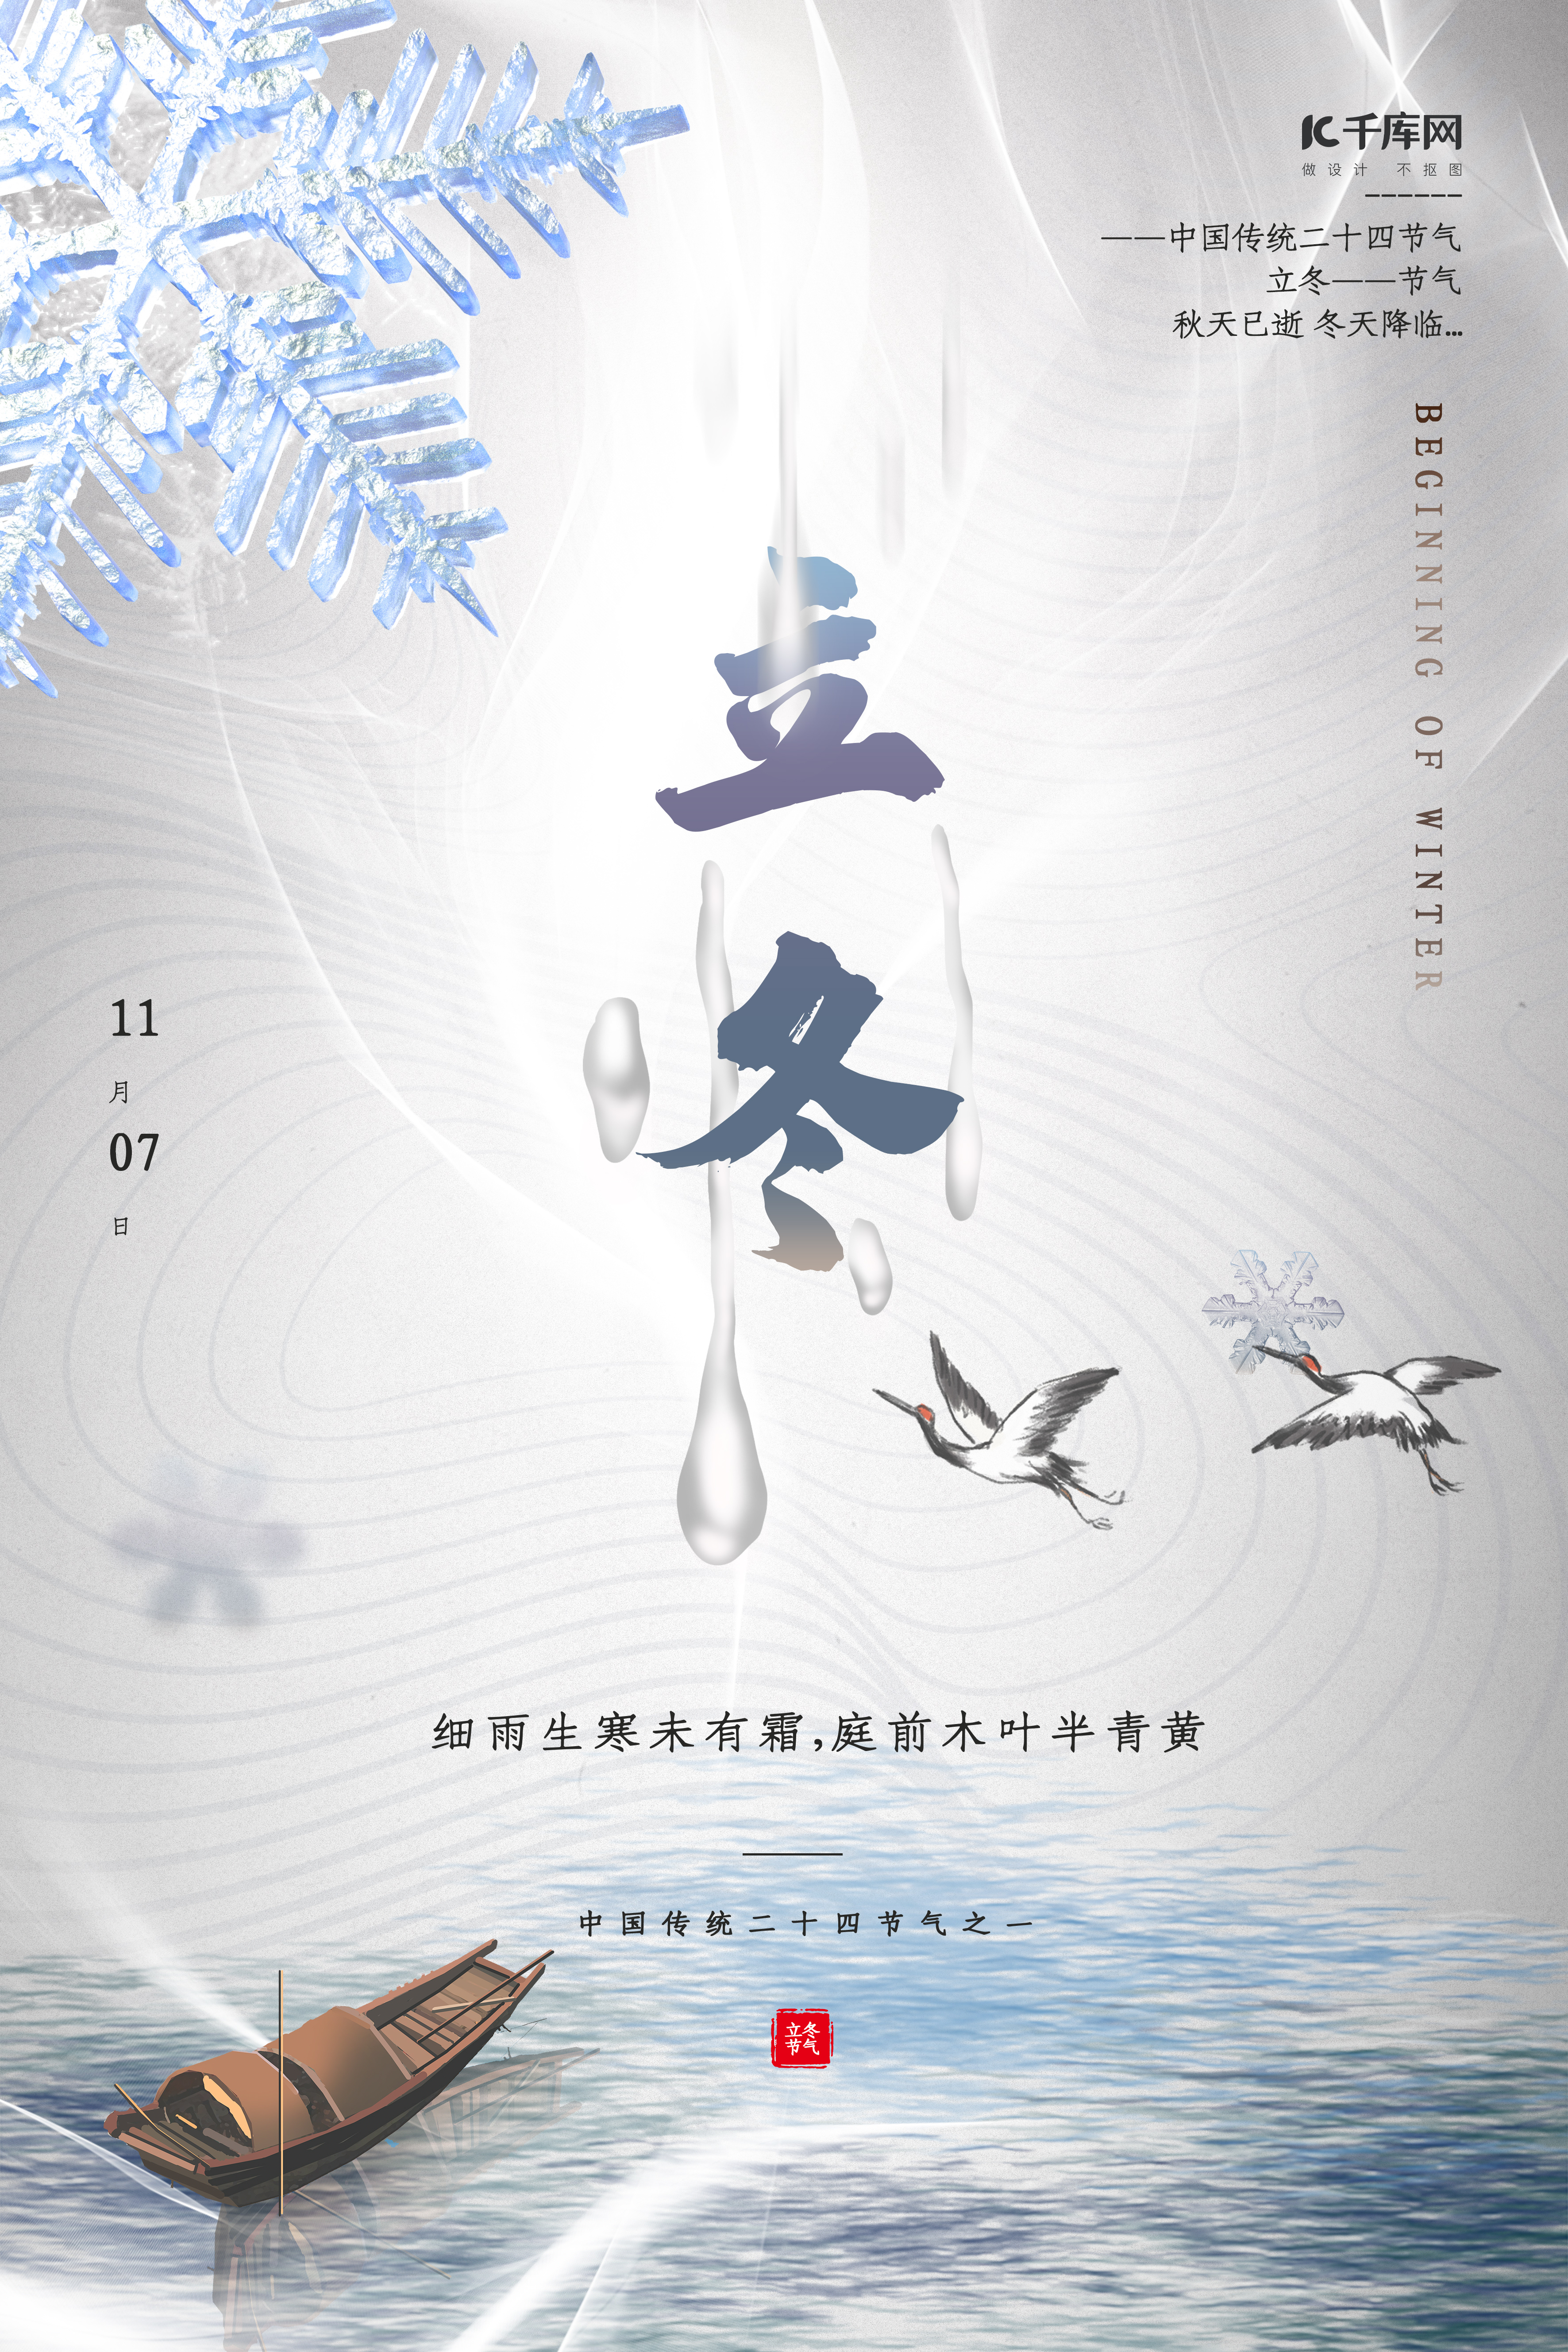 立冬节气古船仙鹤冰晶白色简约海报图片